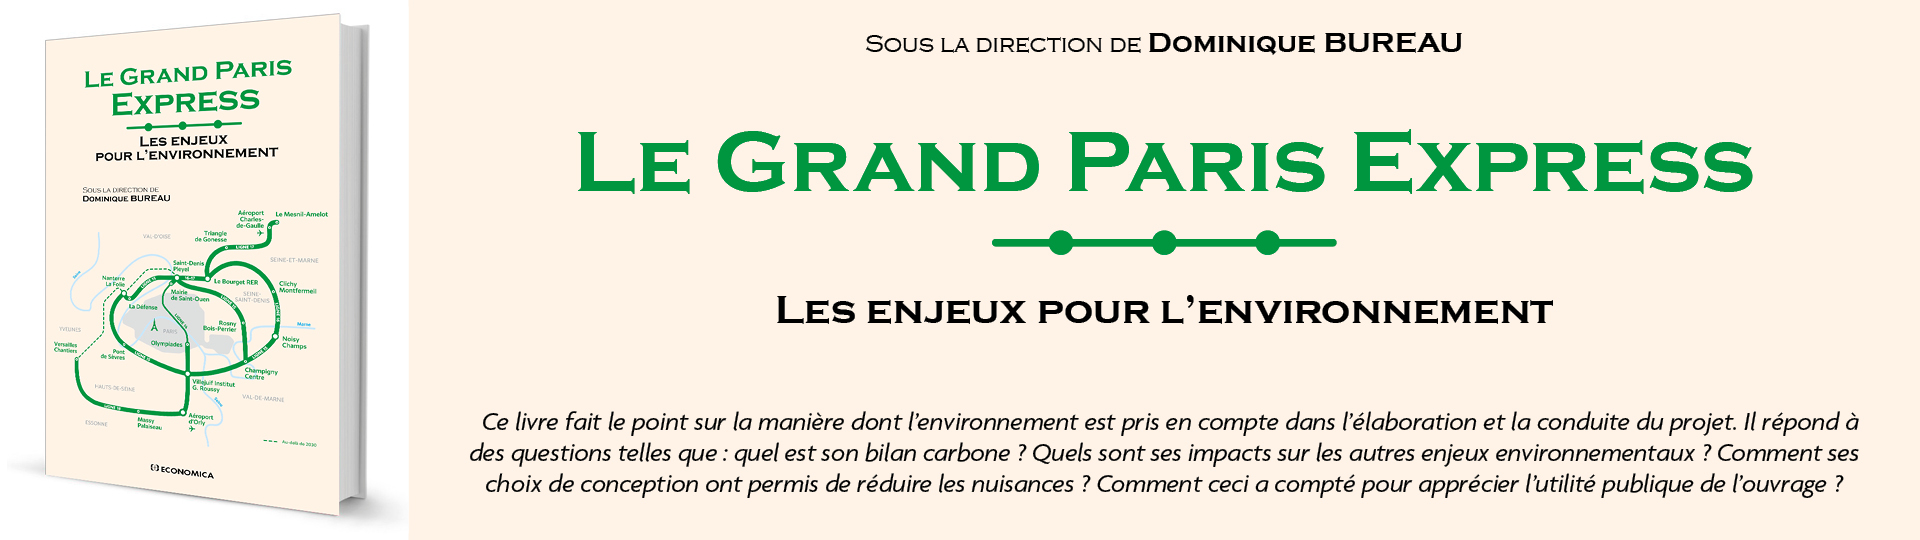 Grand Paris Express - Les enjeux pour l'environnement - 72460